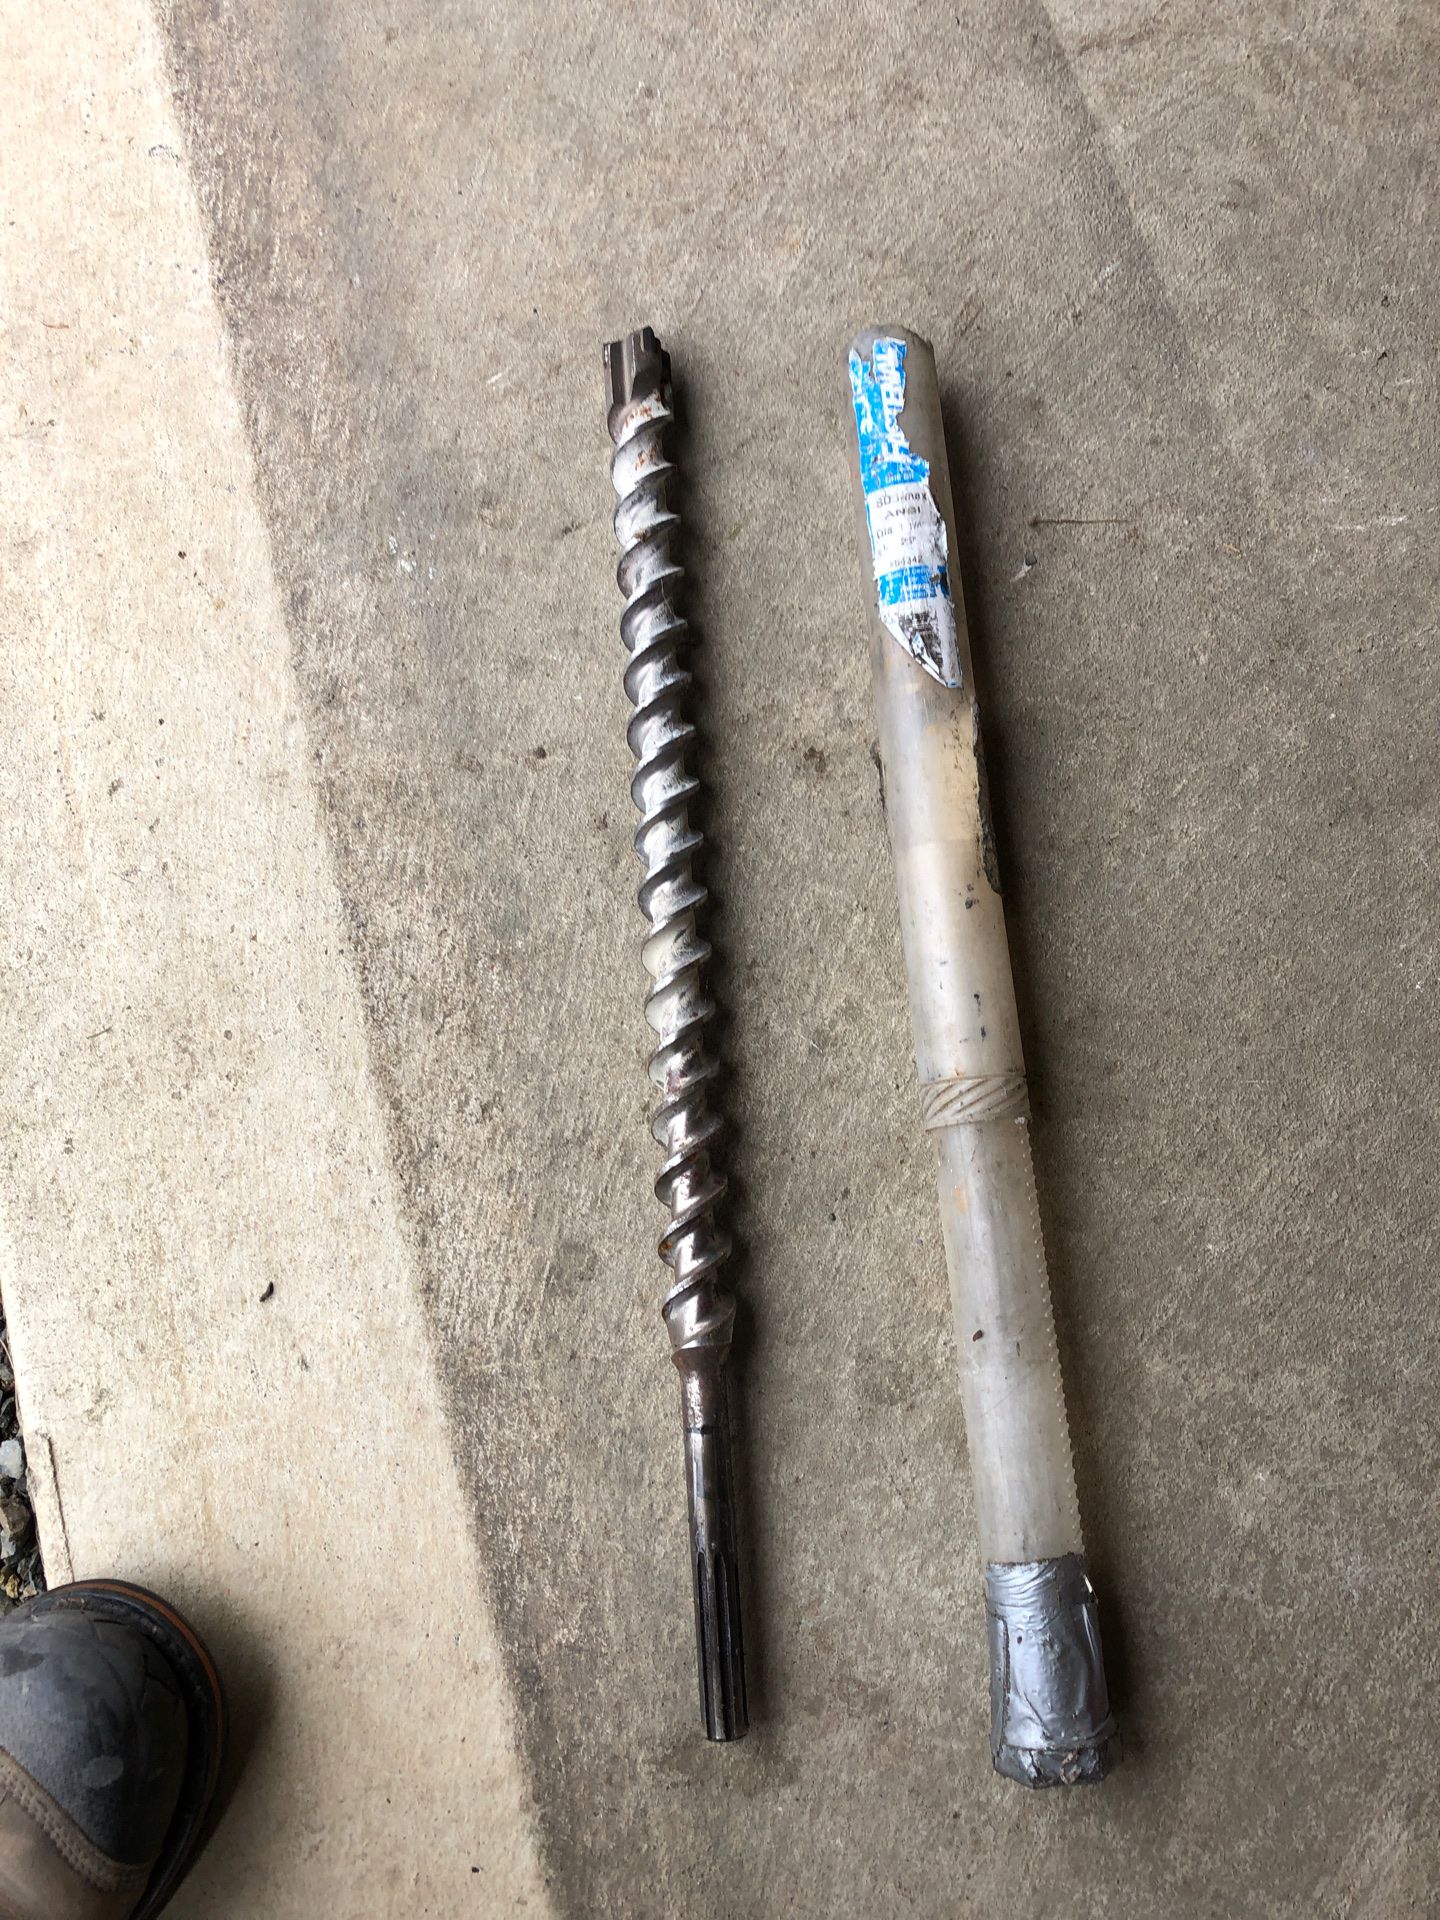 1”1/4 sds concrete drill bit 18” long